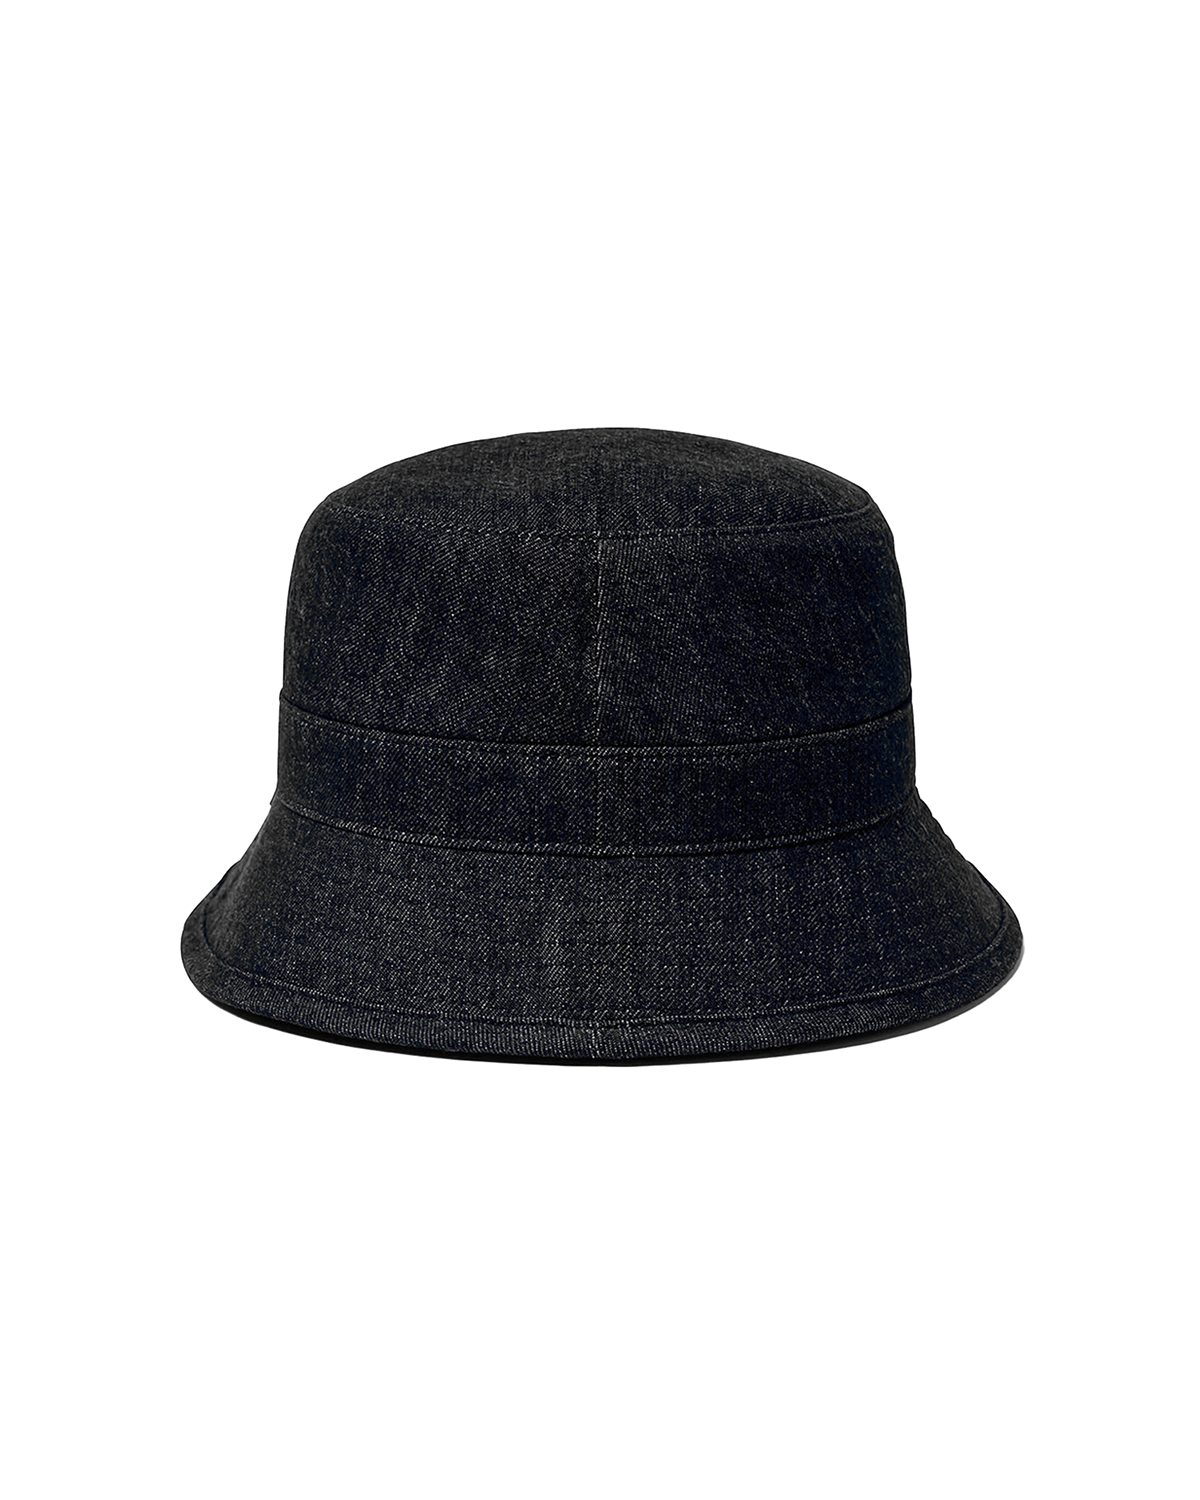 Hat 16 Black